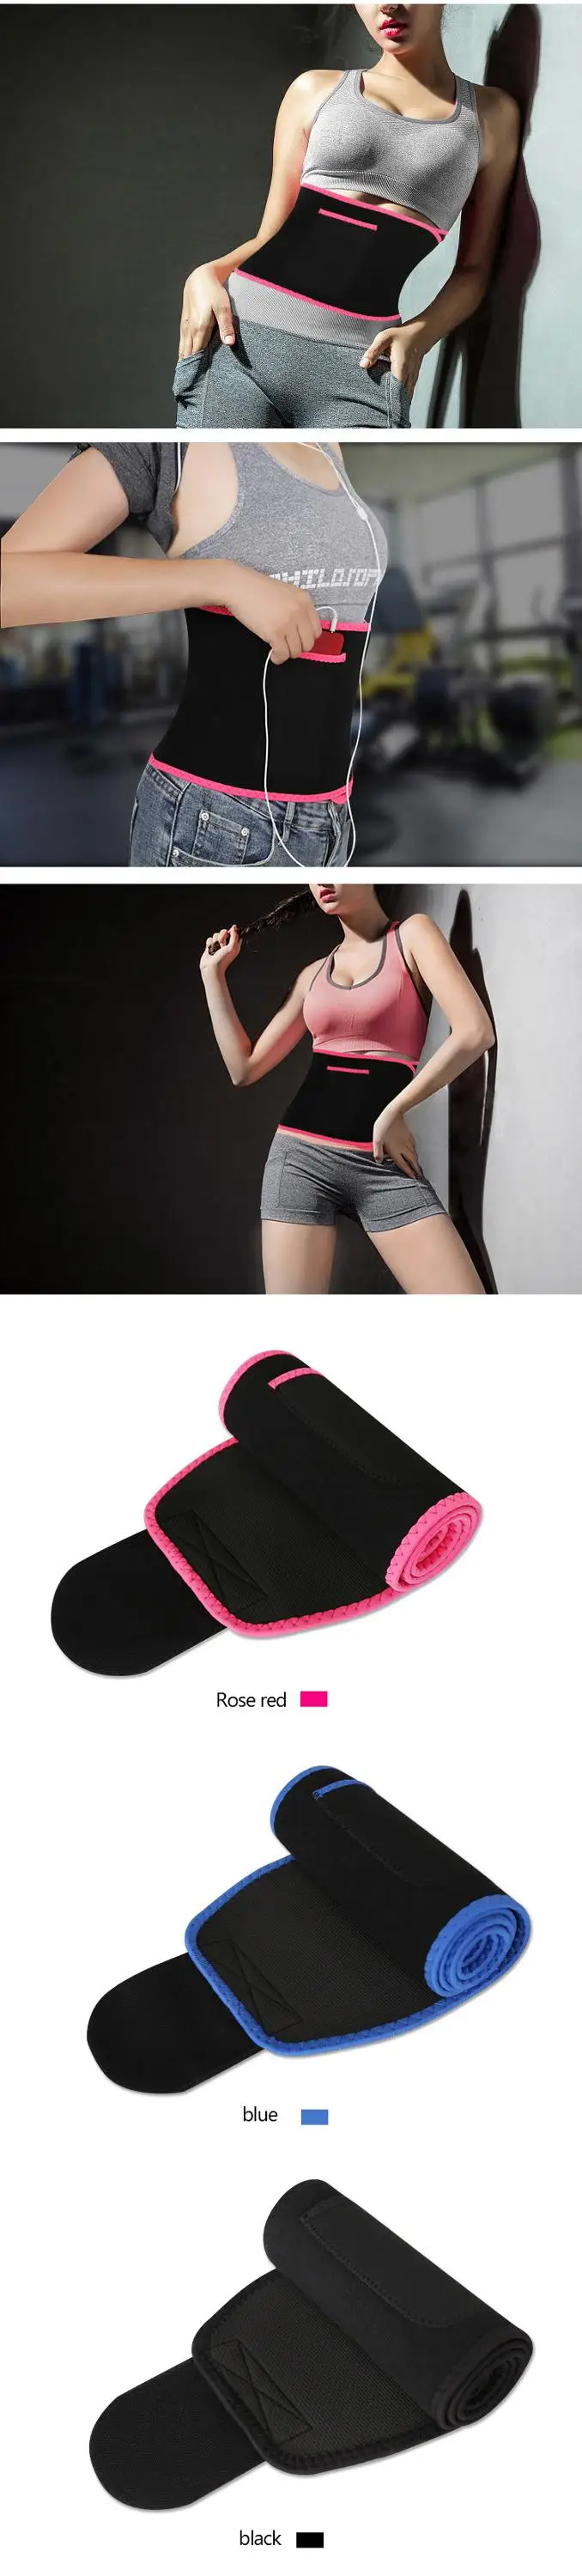 Enerup Free Sample Pocket Neoprene Sports Slimming Custom Waist Support Body Shaper Trimmer Trainer Belt